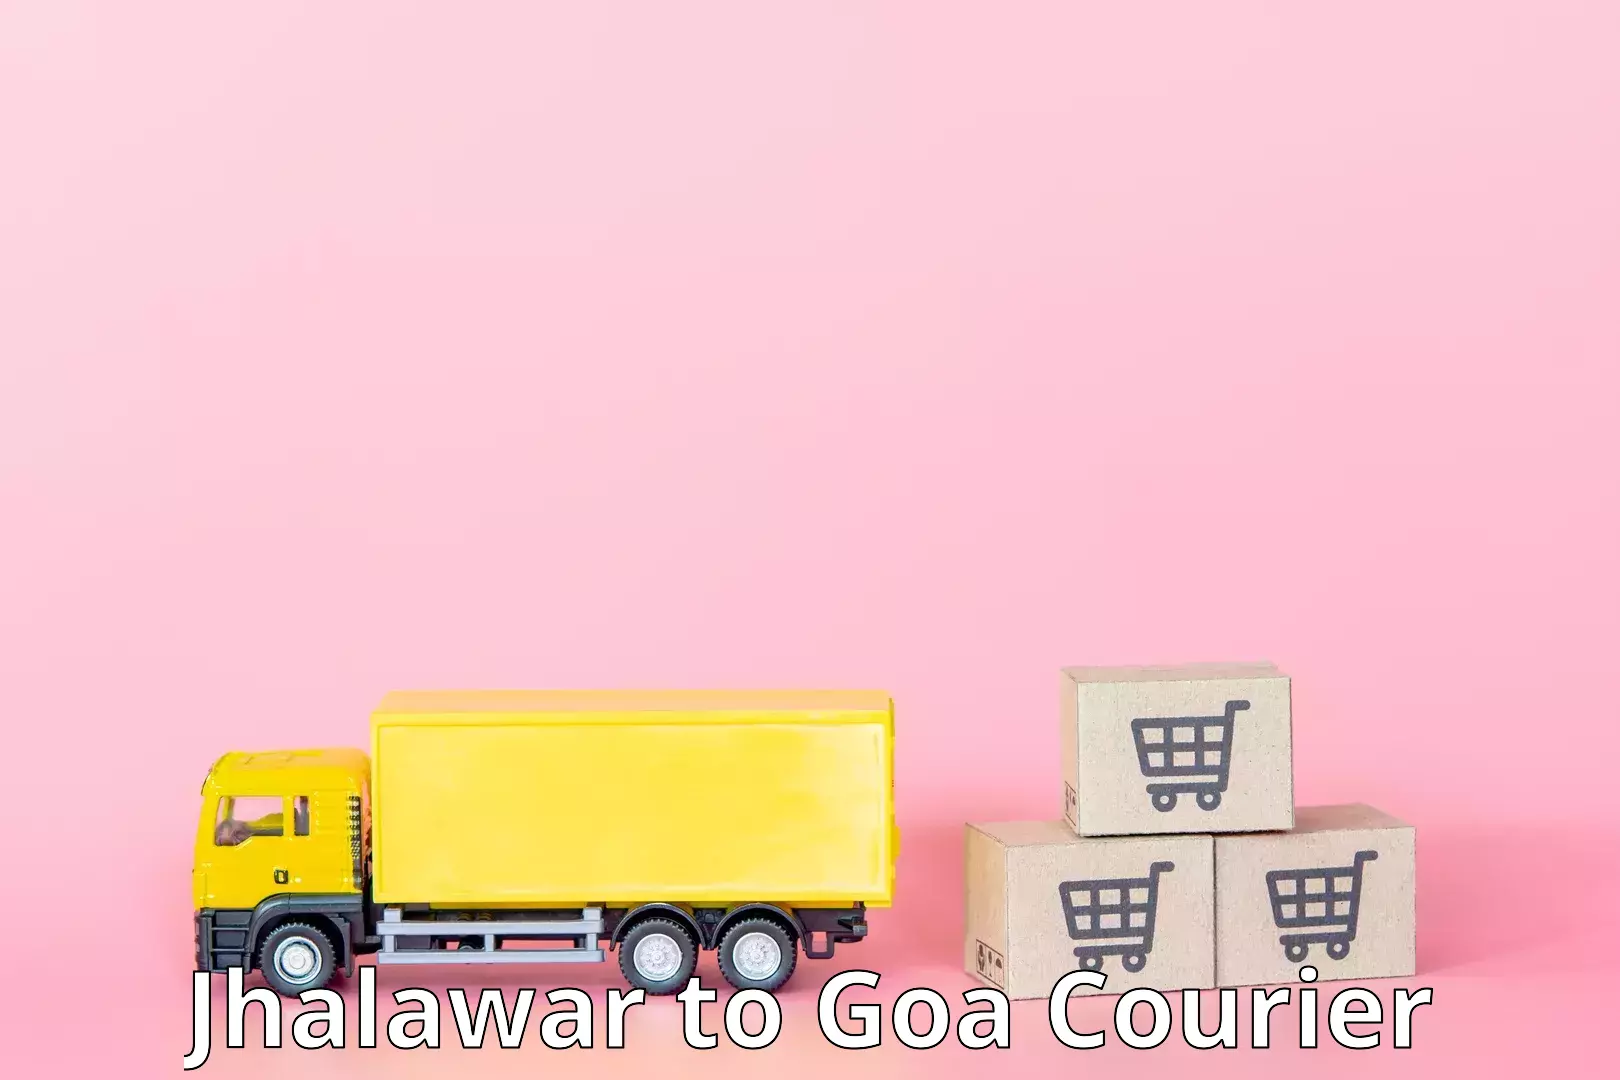 Global parcel delivery Jhalawar to Margao